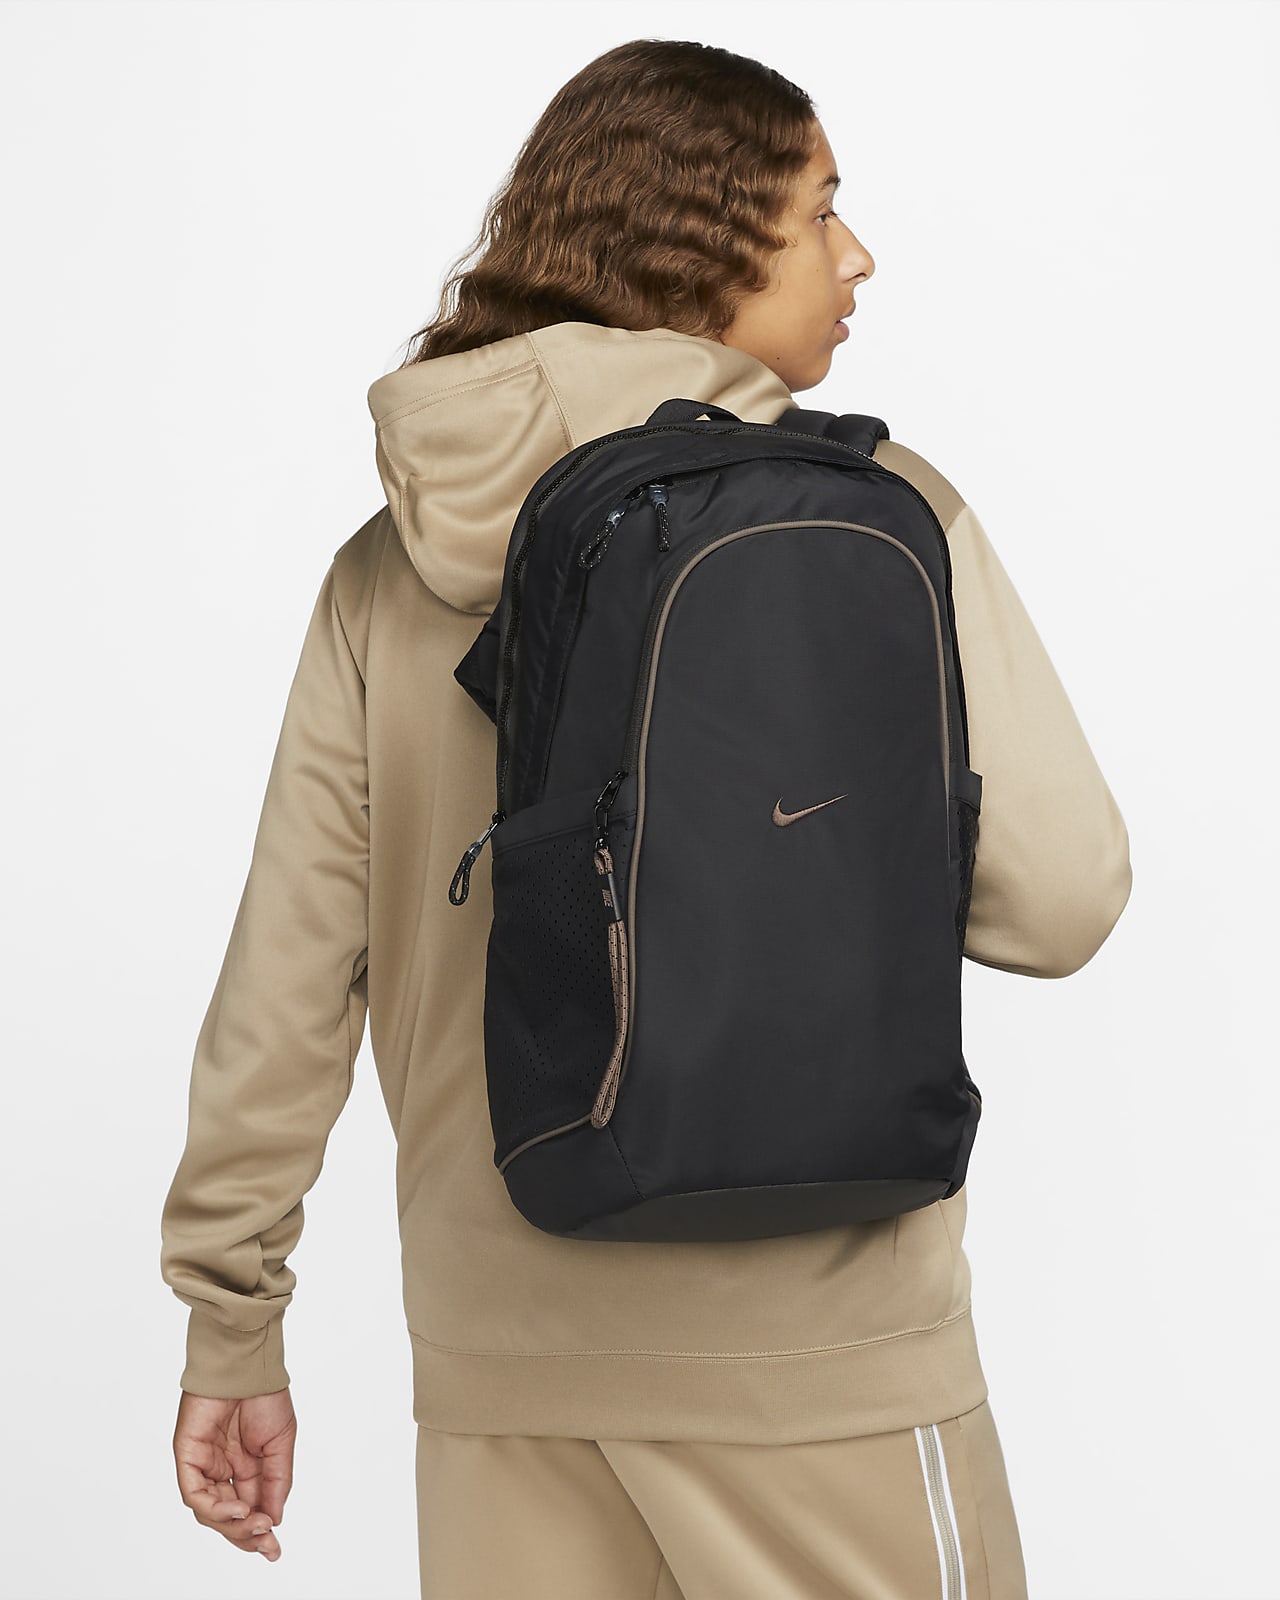 Nike Essentials Bag in Brown